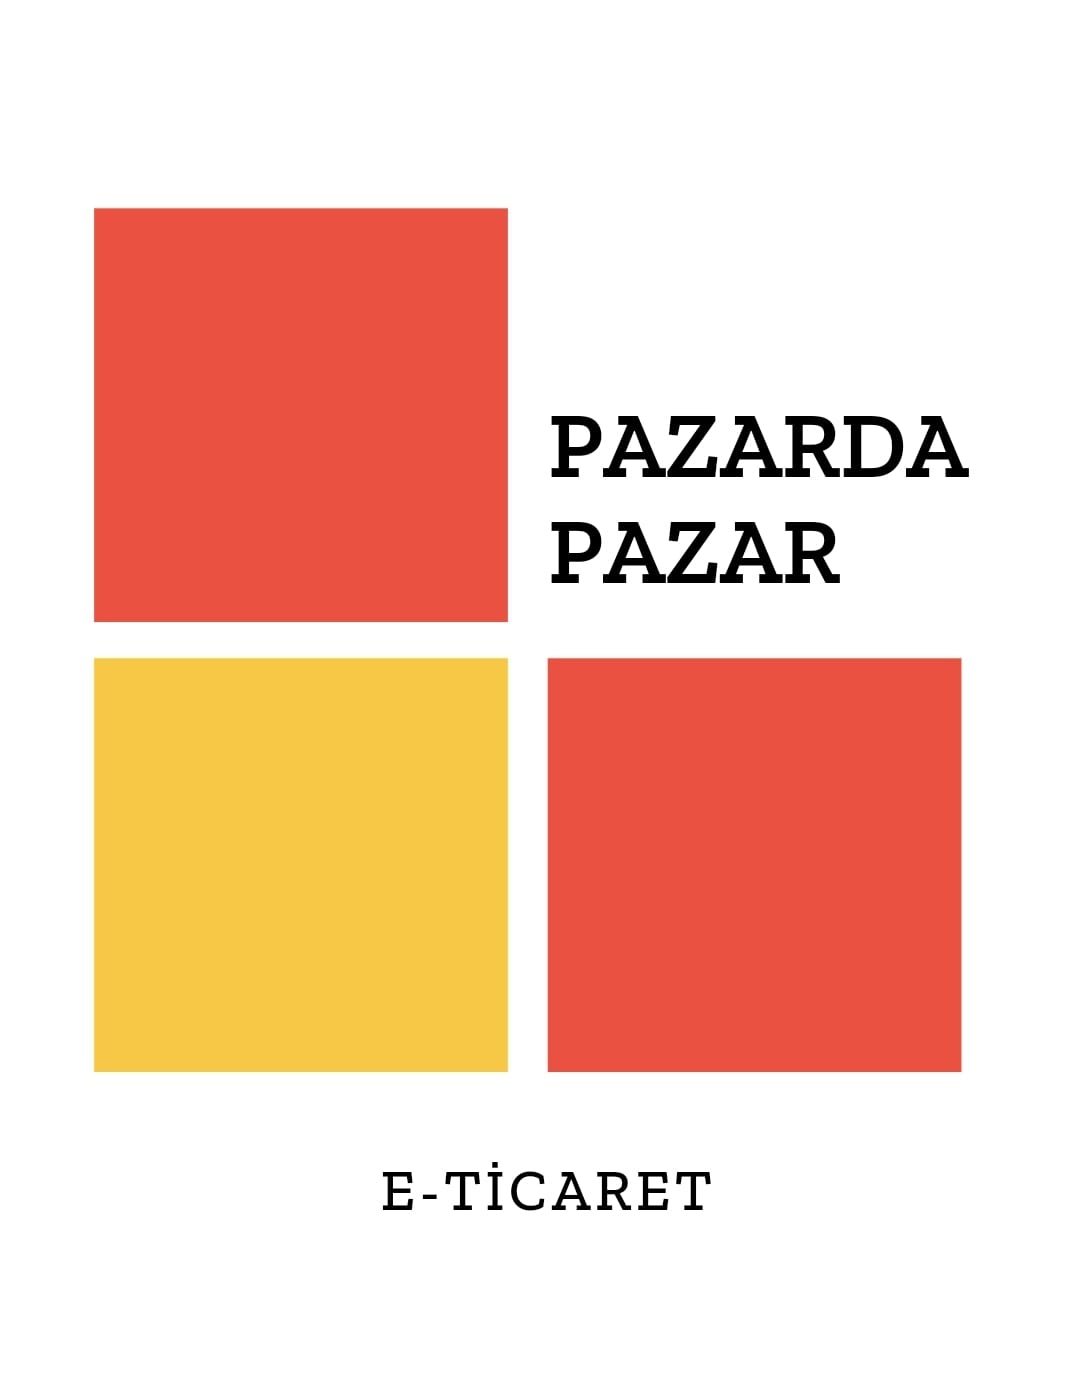 PazardaPazar